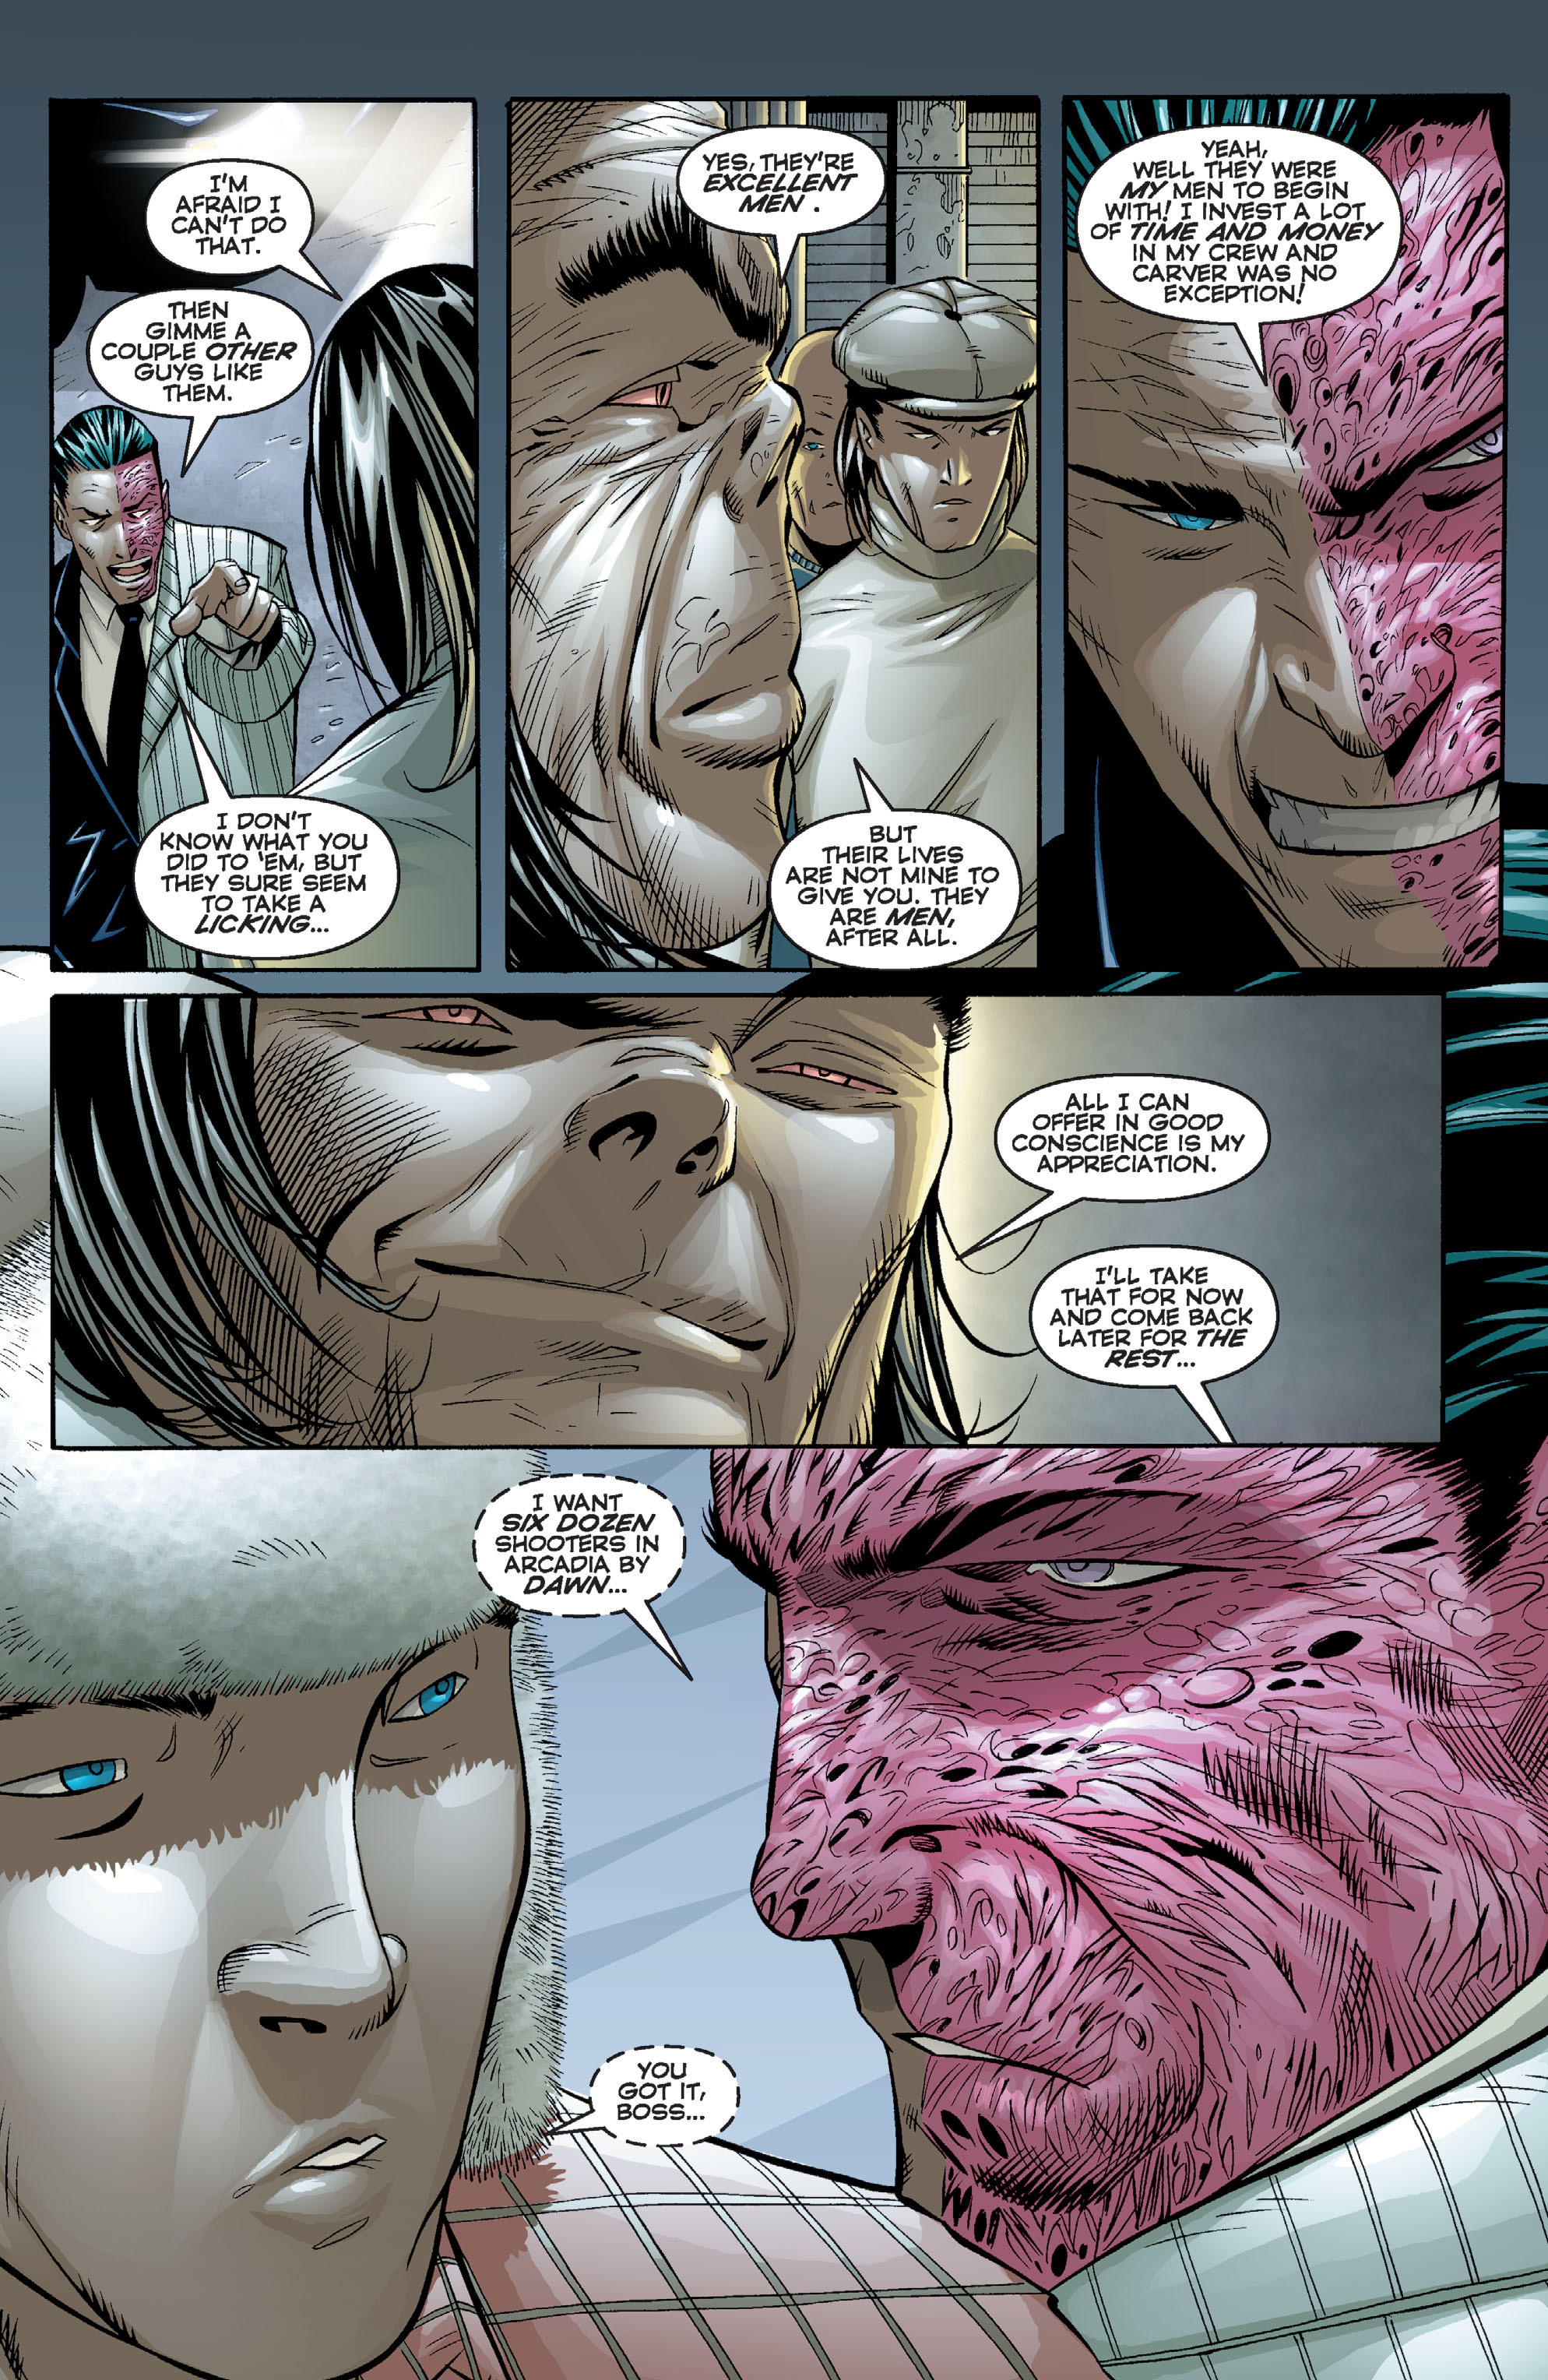 DC Comics/Dark Horse Comics: Justice League Full #1 - English 363